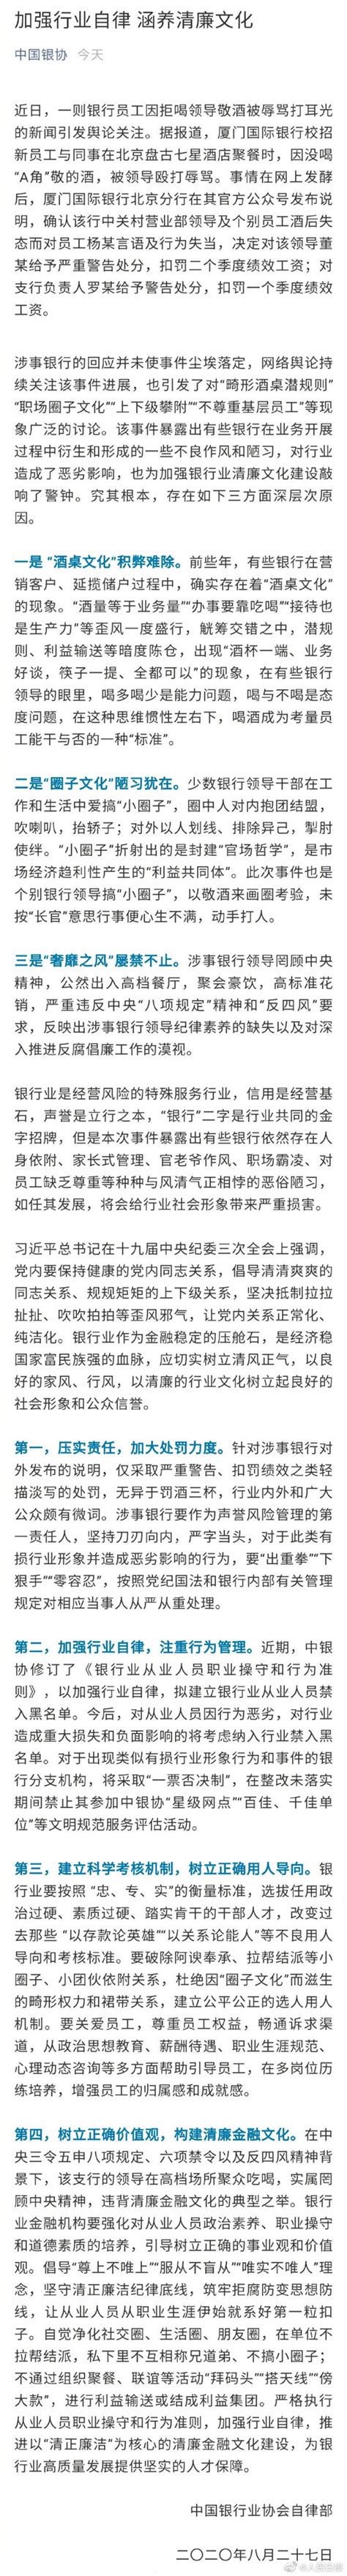 中国银协回应员工拒喝敬酒被打 拟建银行业从业人员禁入黑名单_新民社会_新民网